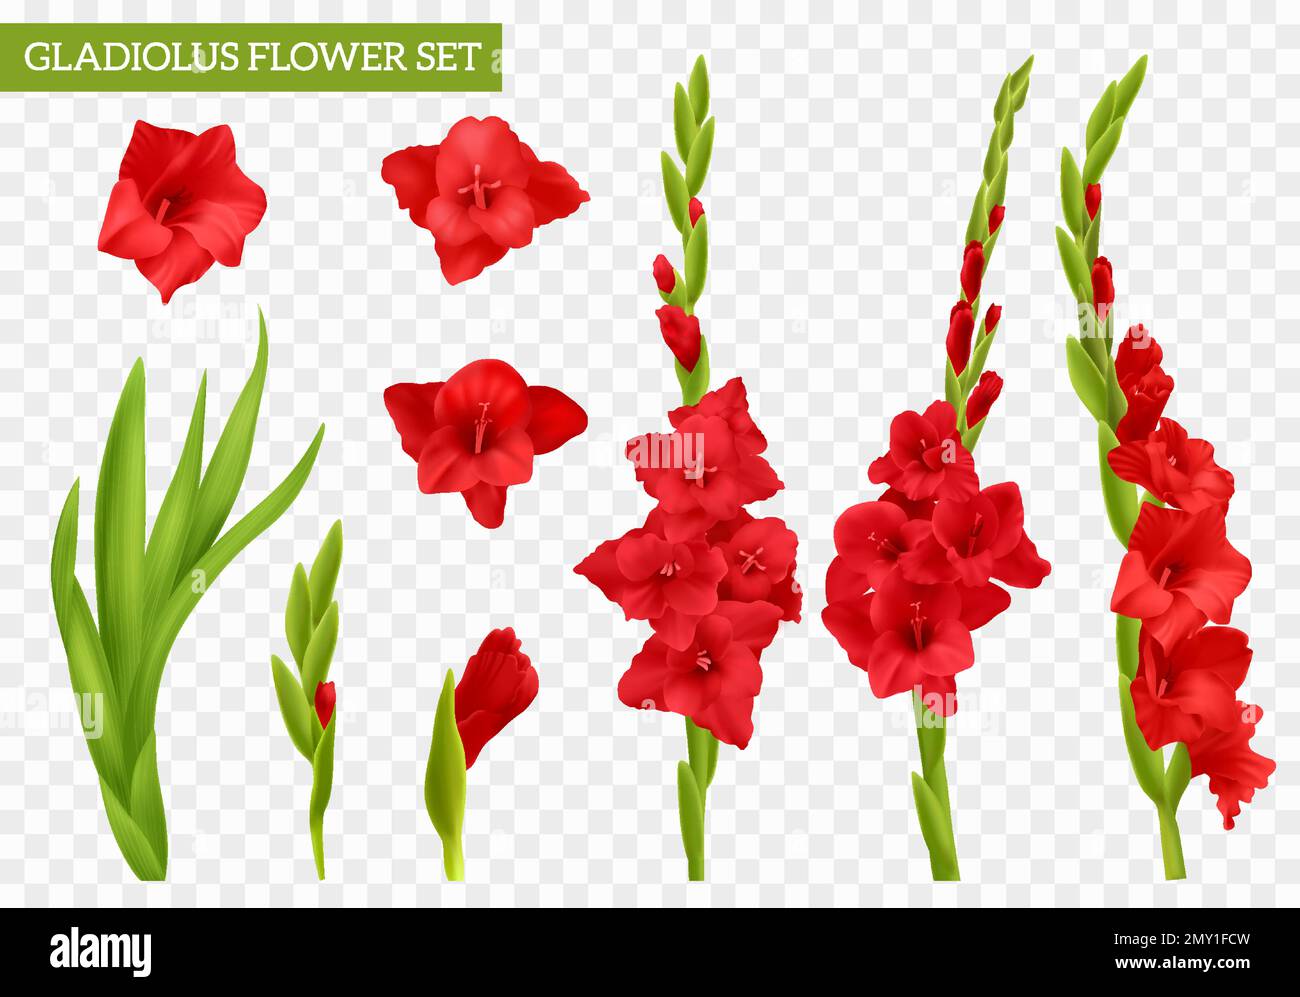 Jeu de gladiolus rouge réaliste avec fleurs et feuilles isolées sur une illustration vectorielle d'arrière-plan transparente Illustration de Vecteur